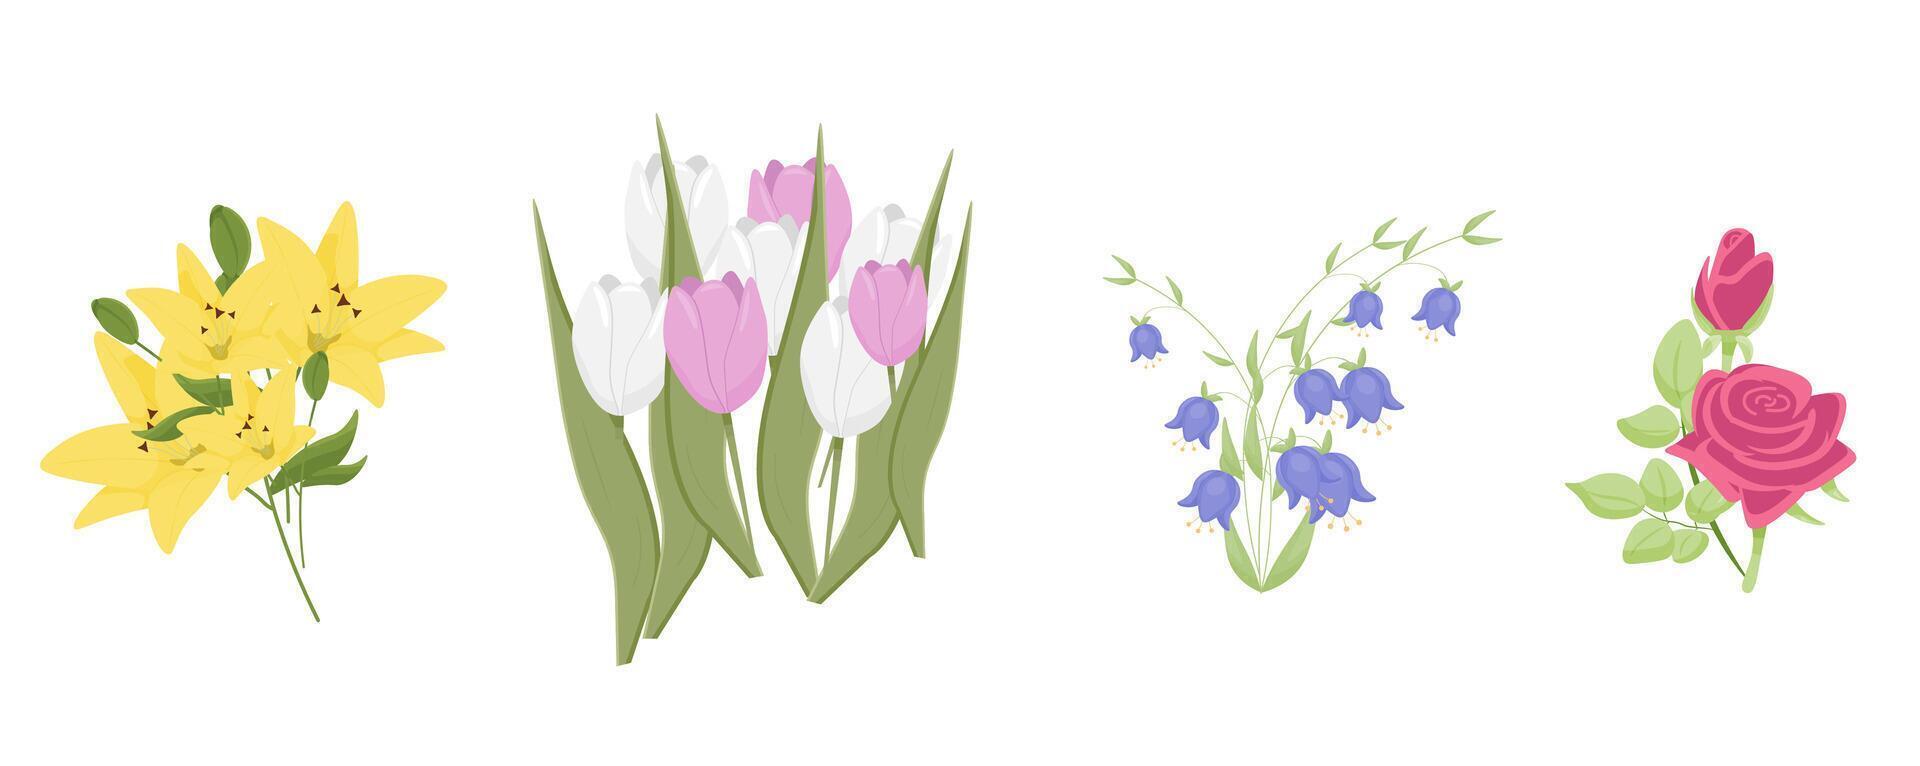 einstellen von Blumen. Rosen, Lilien, Tulpen, Glockenblumen. Vektor Garten Illustrationen.